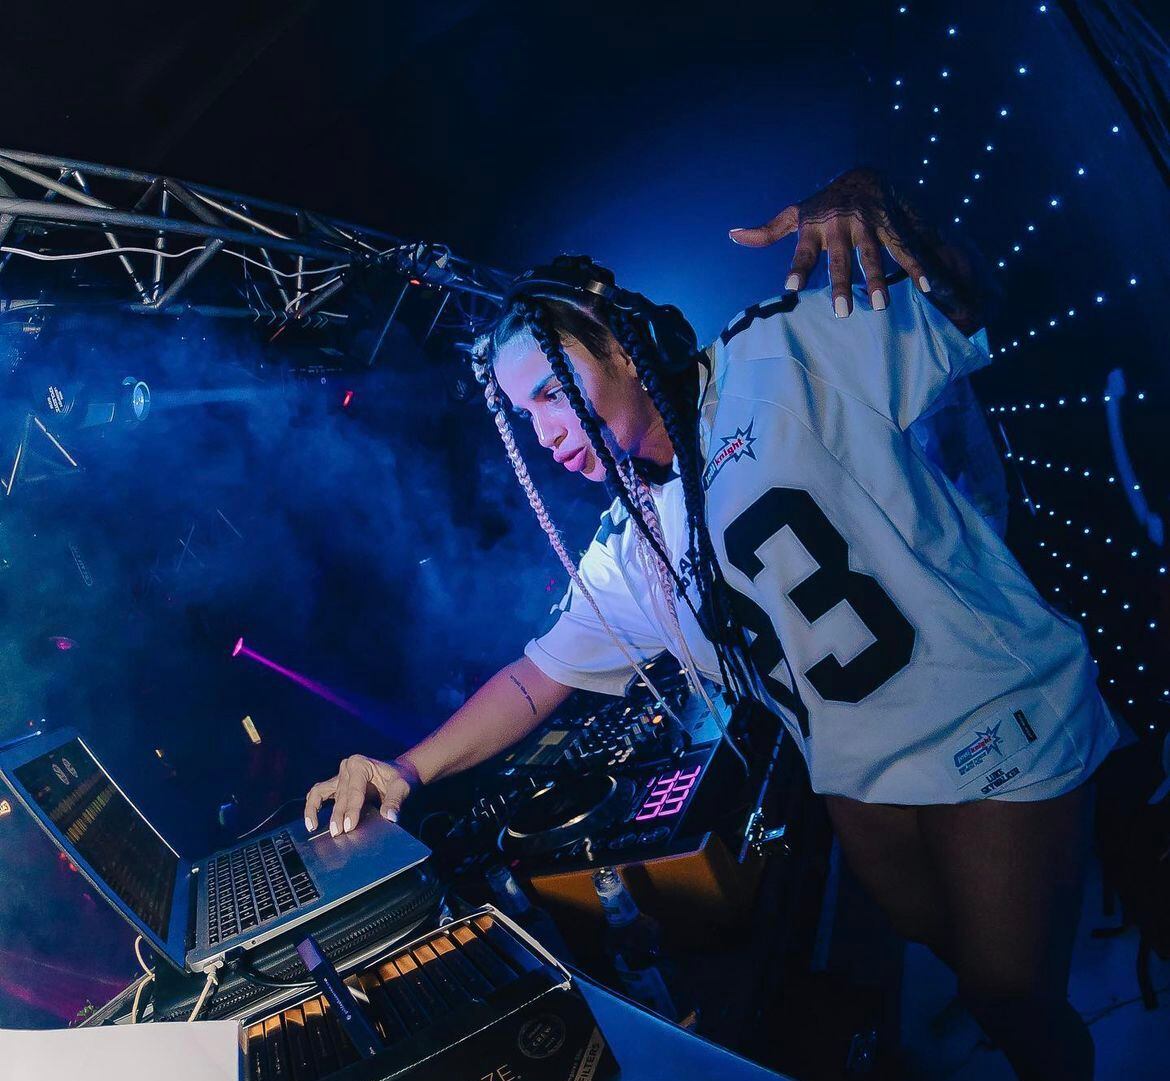 La DJ Carol I Selectress ha forjado carrera en la música reggae.  Cuenta que al inicio se topó con personas que le pusieron obstáculos, pero se defendió con su conocimiento sobre el género.